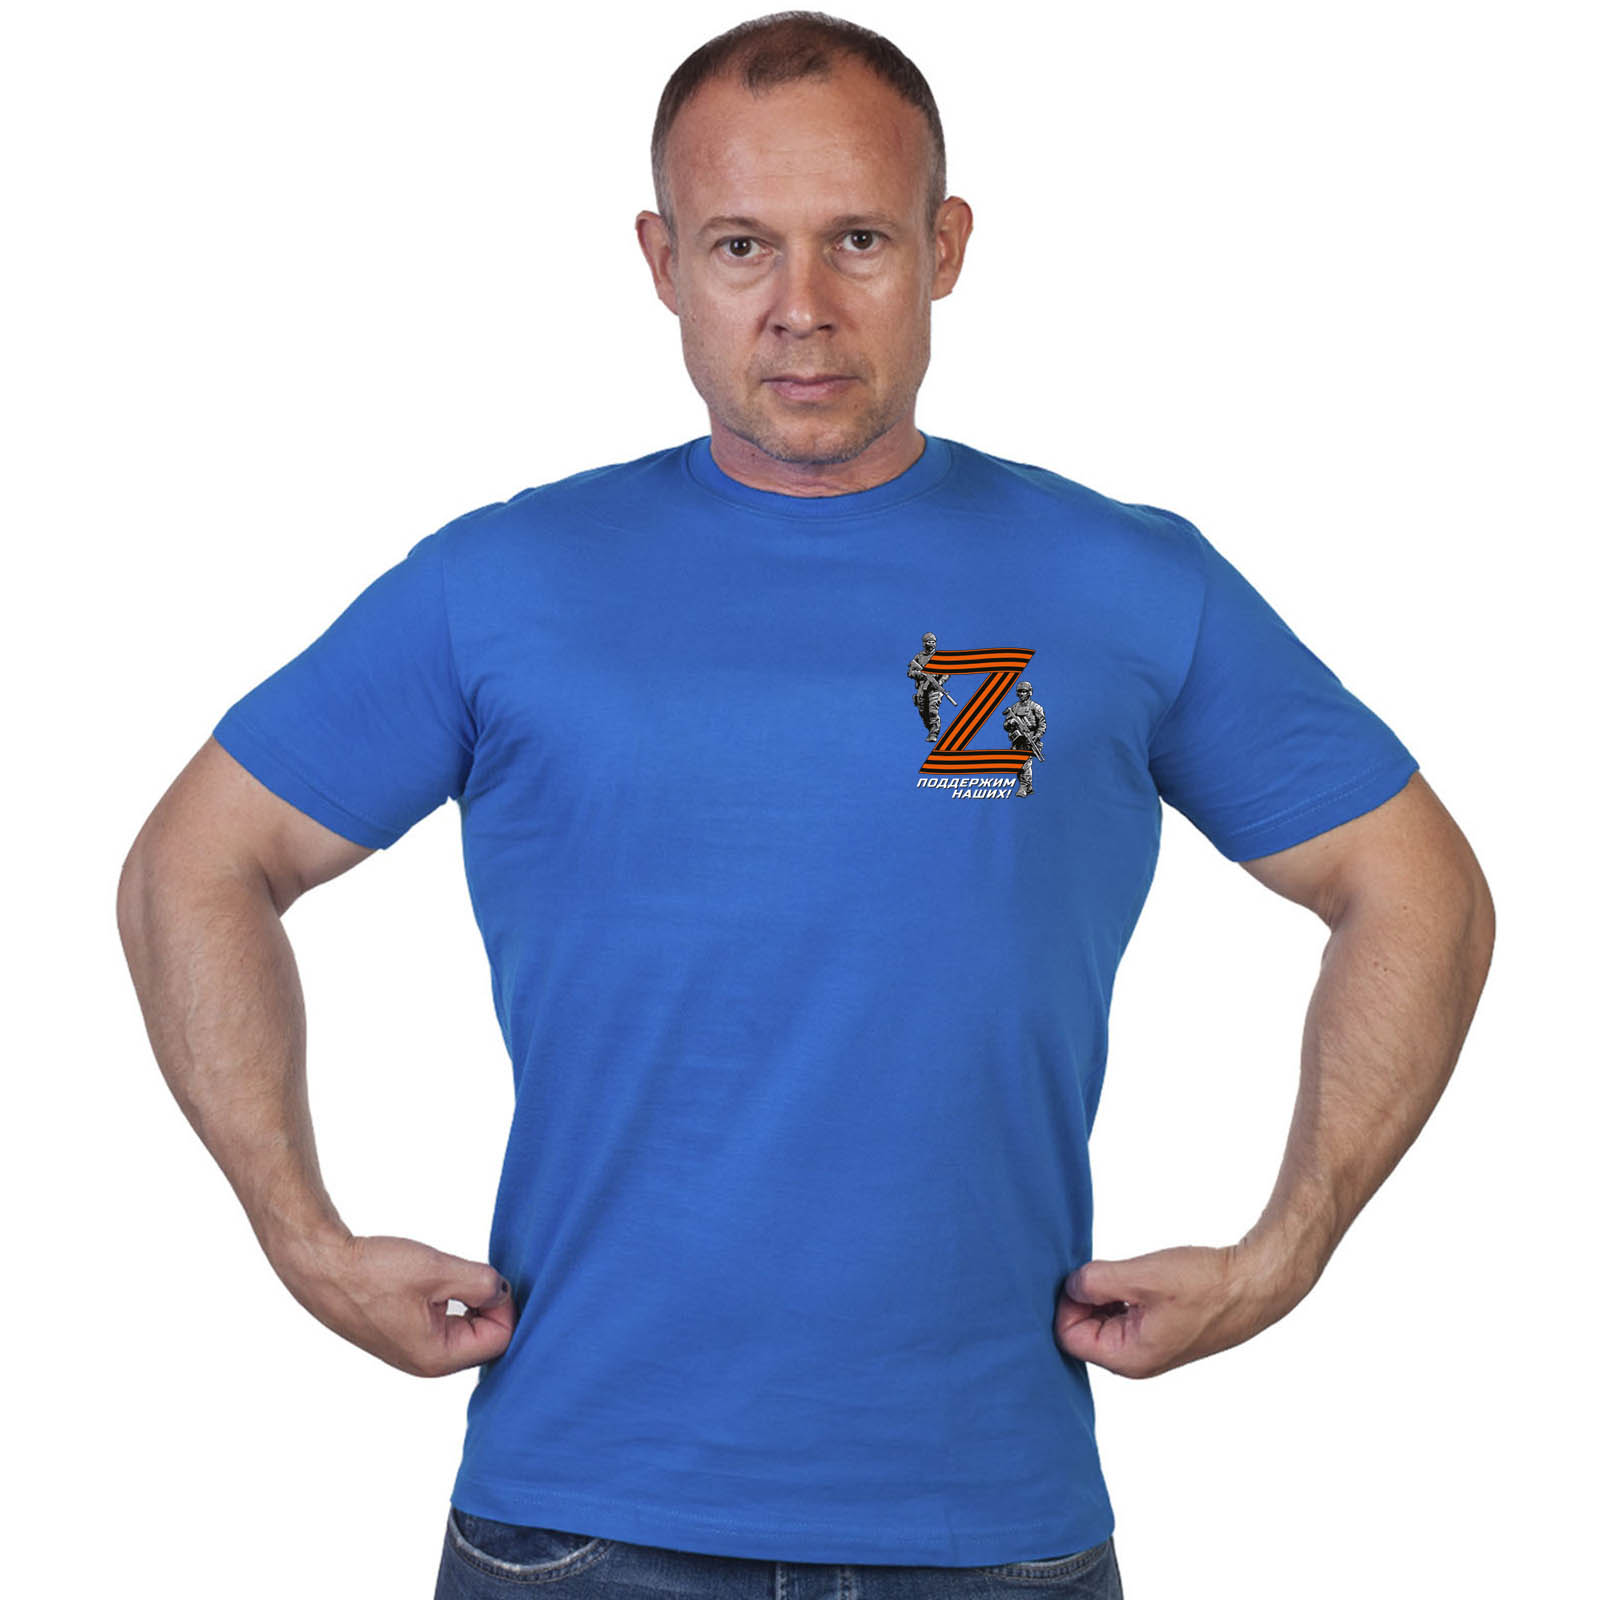 Васильковая футболка с термоаппликацией Операция «Z»